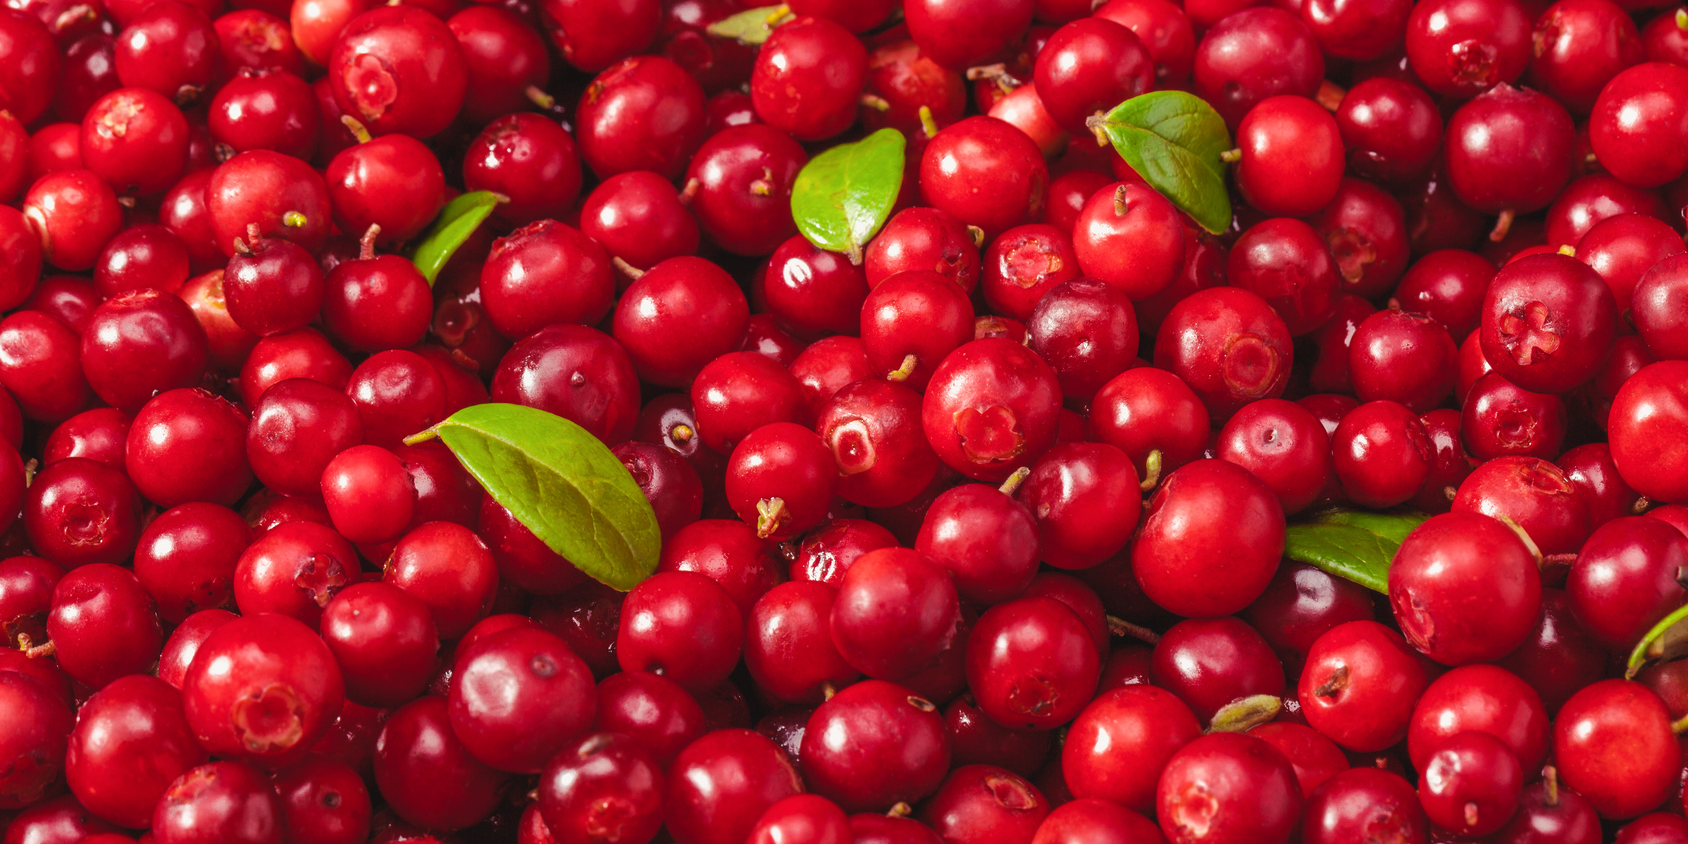 Will FDA Censor the Cranberry?